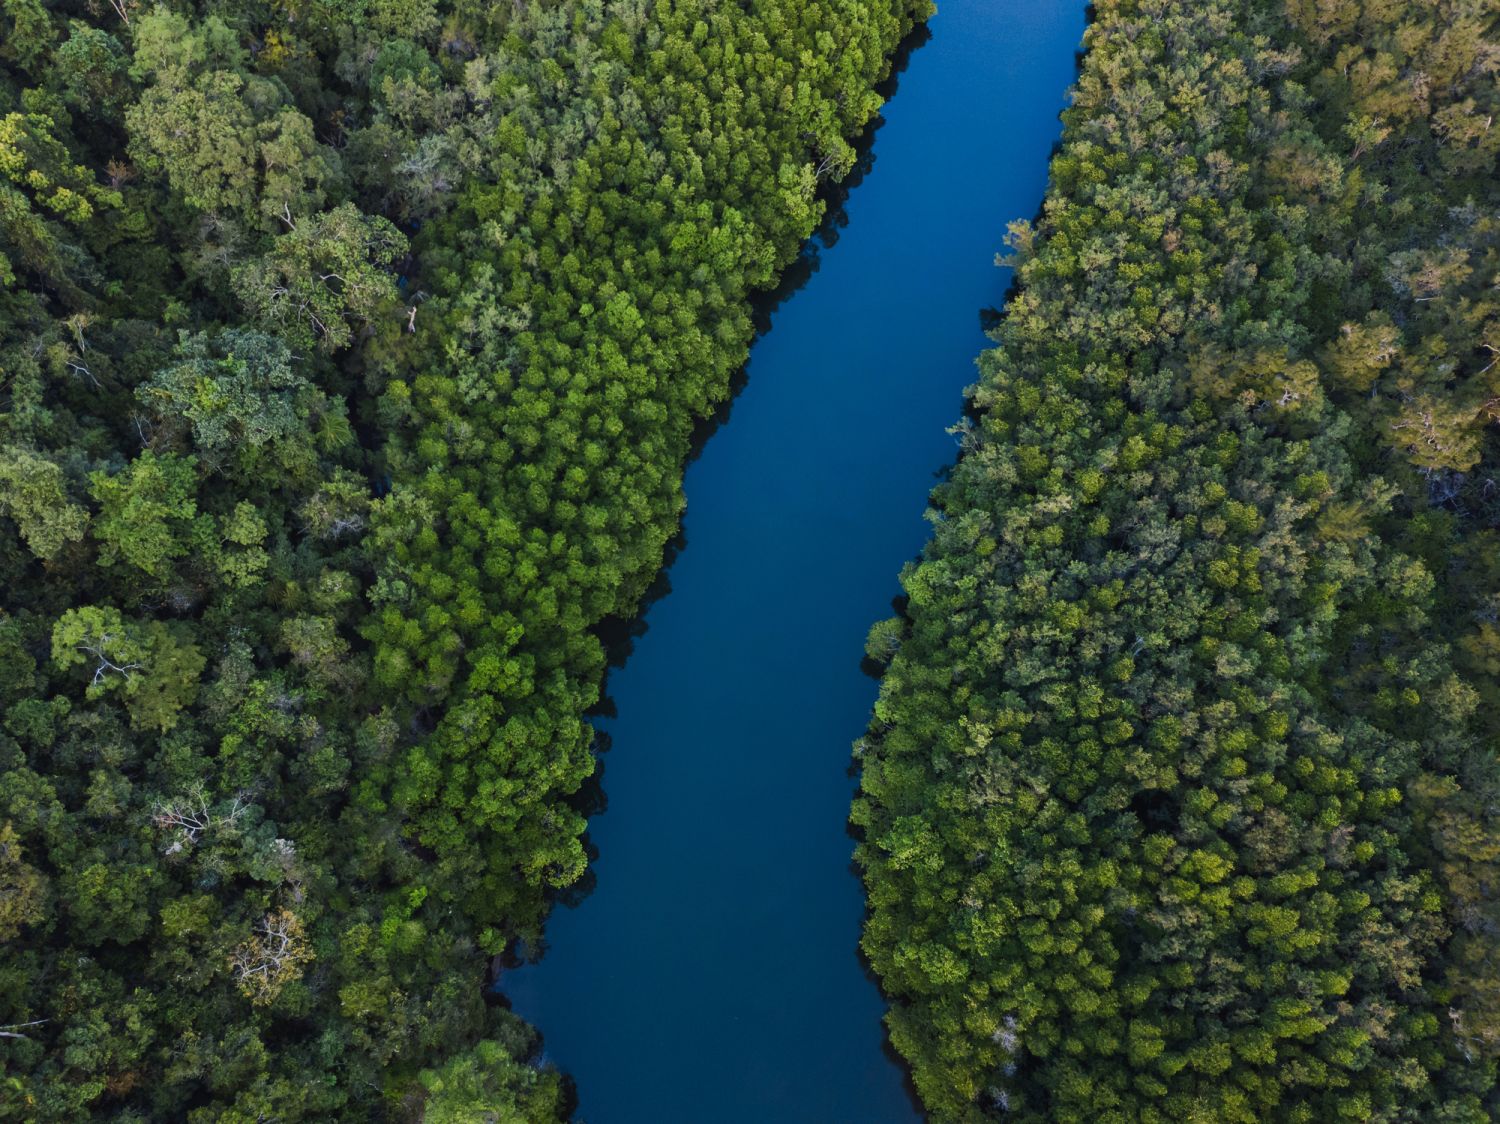 Luftaufnahme von einem Fluss durch den Wald. Symbolisiert den freien Bluttransport